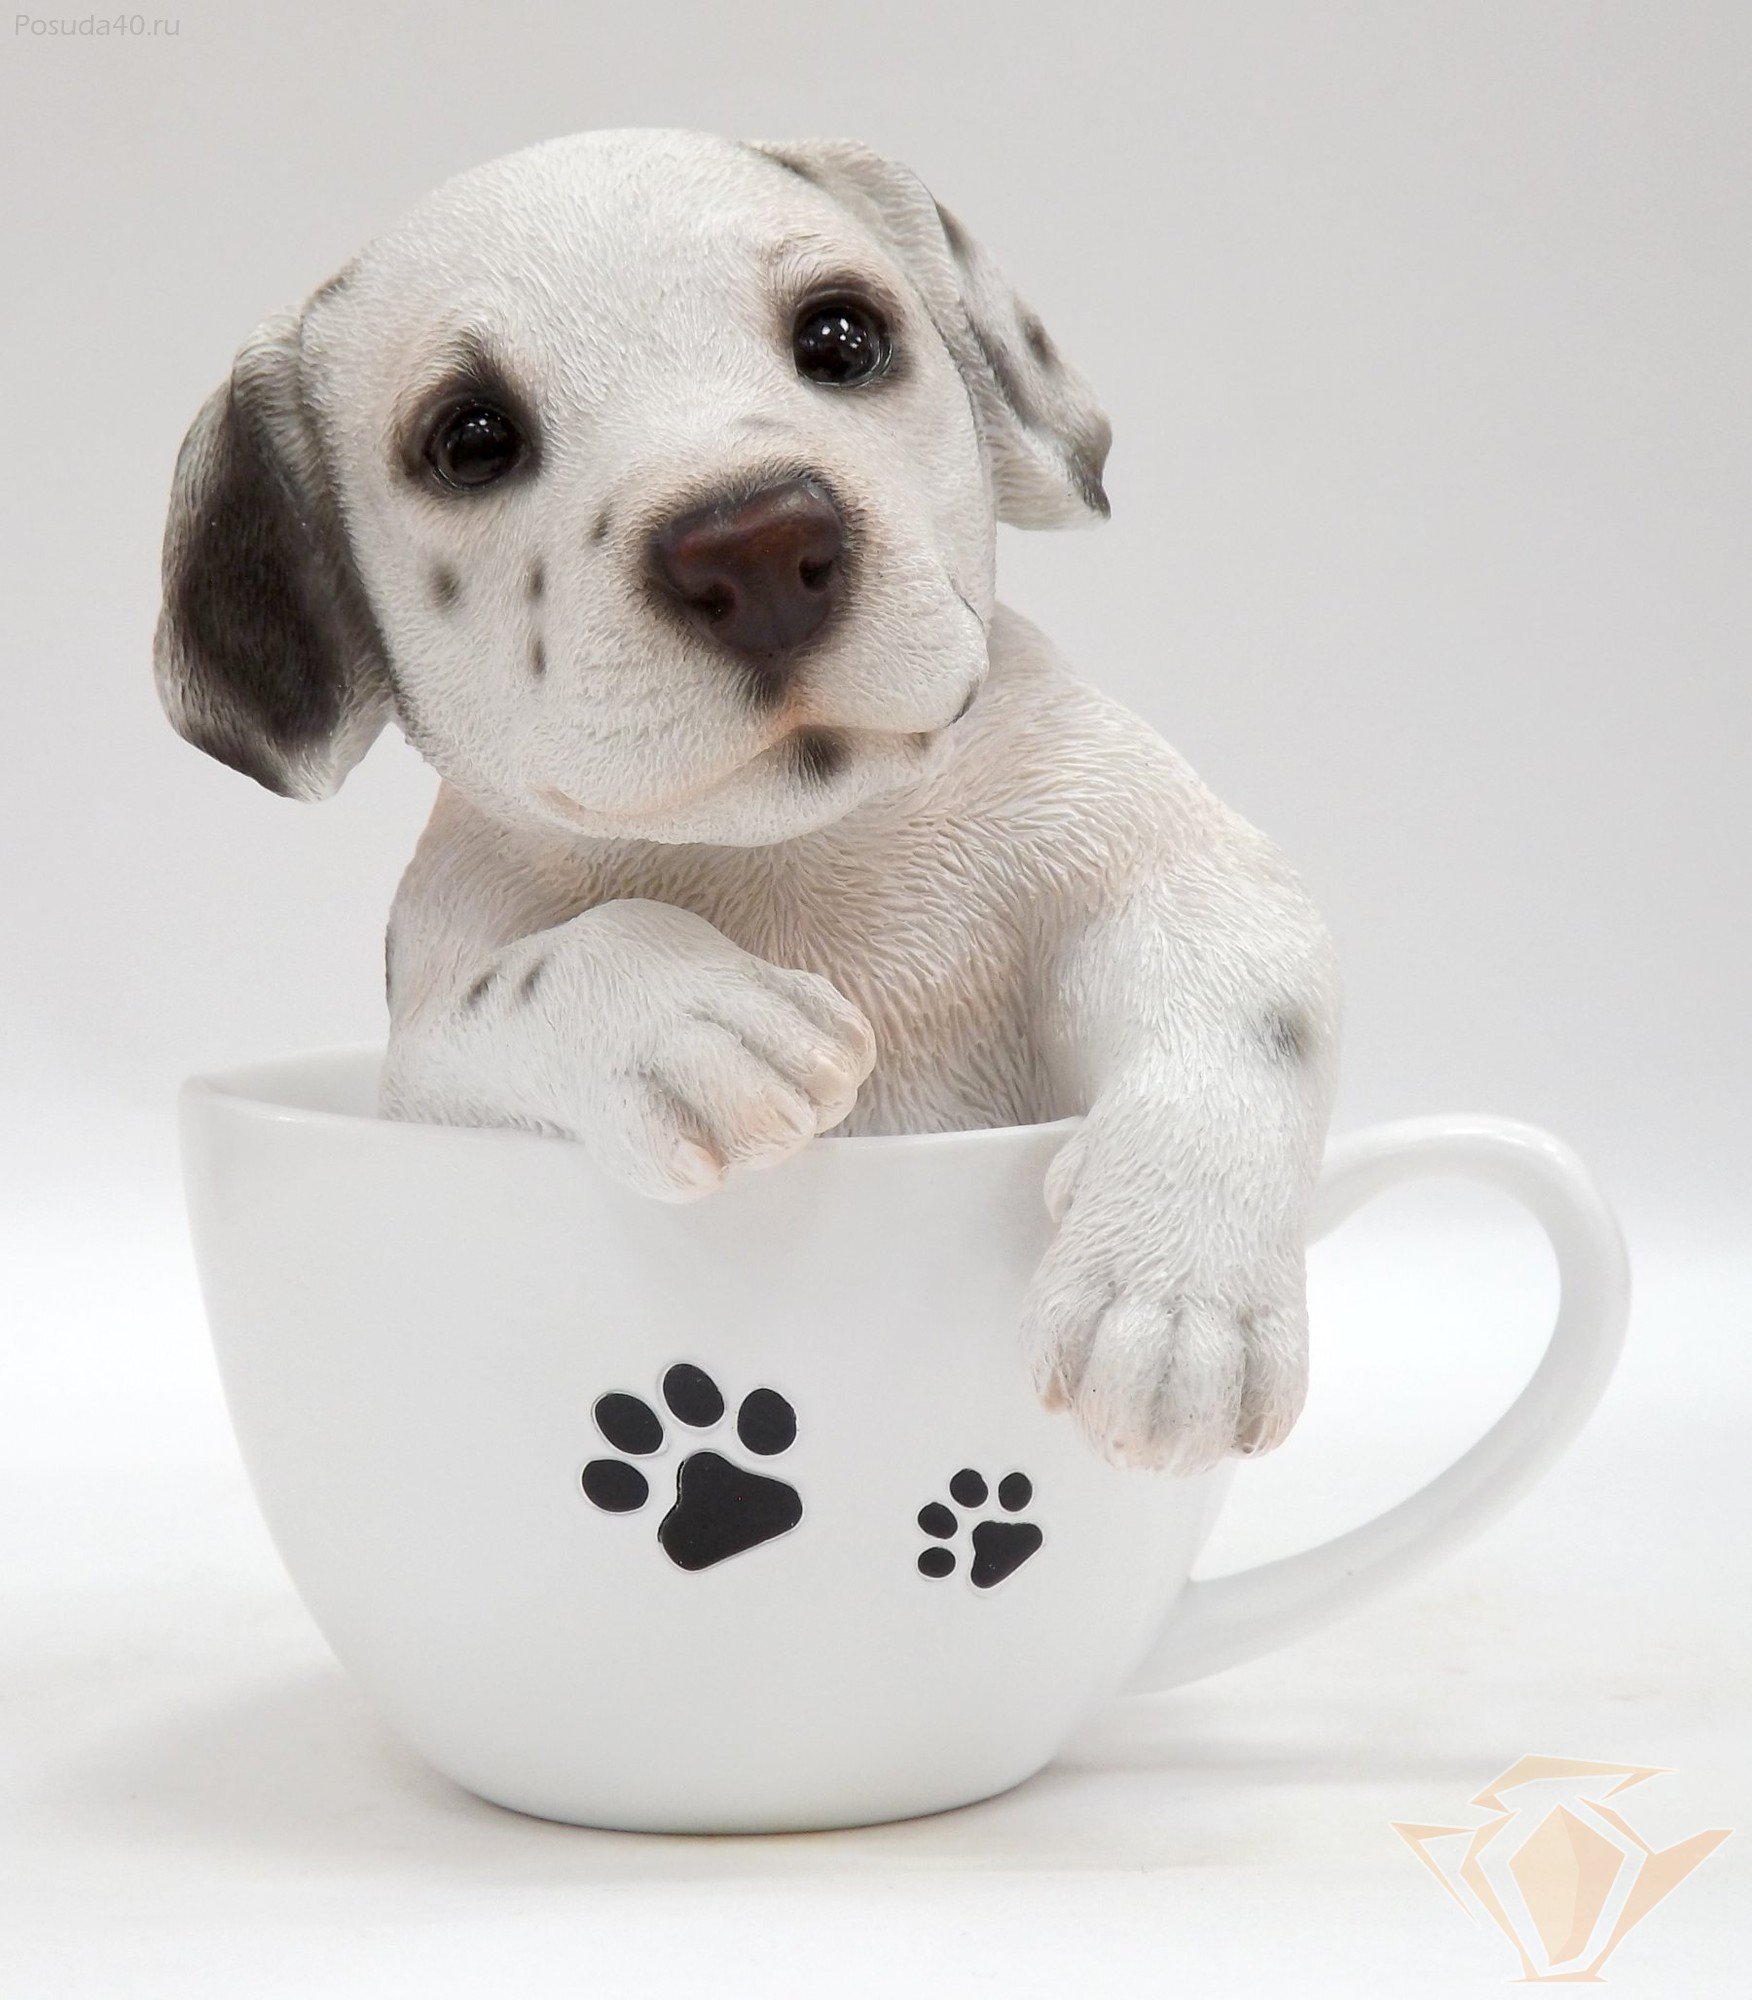 Dogs cup. Собачка в чашке. Собака в кружке. Щенок в чашке. Чашки для собак.